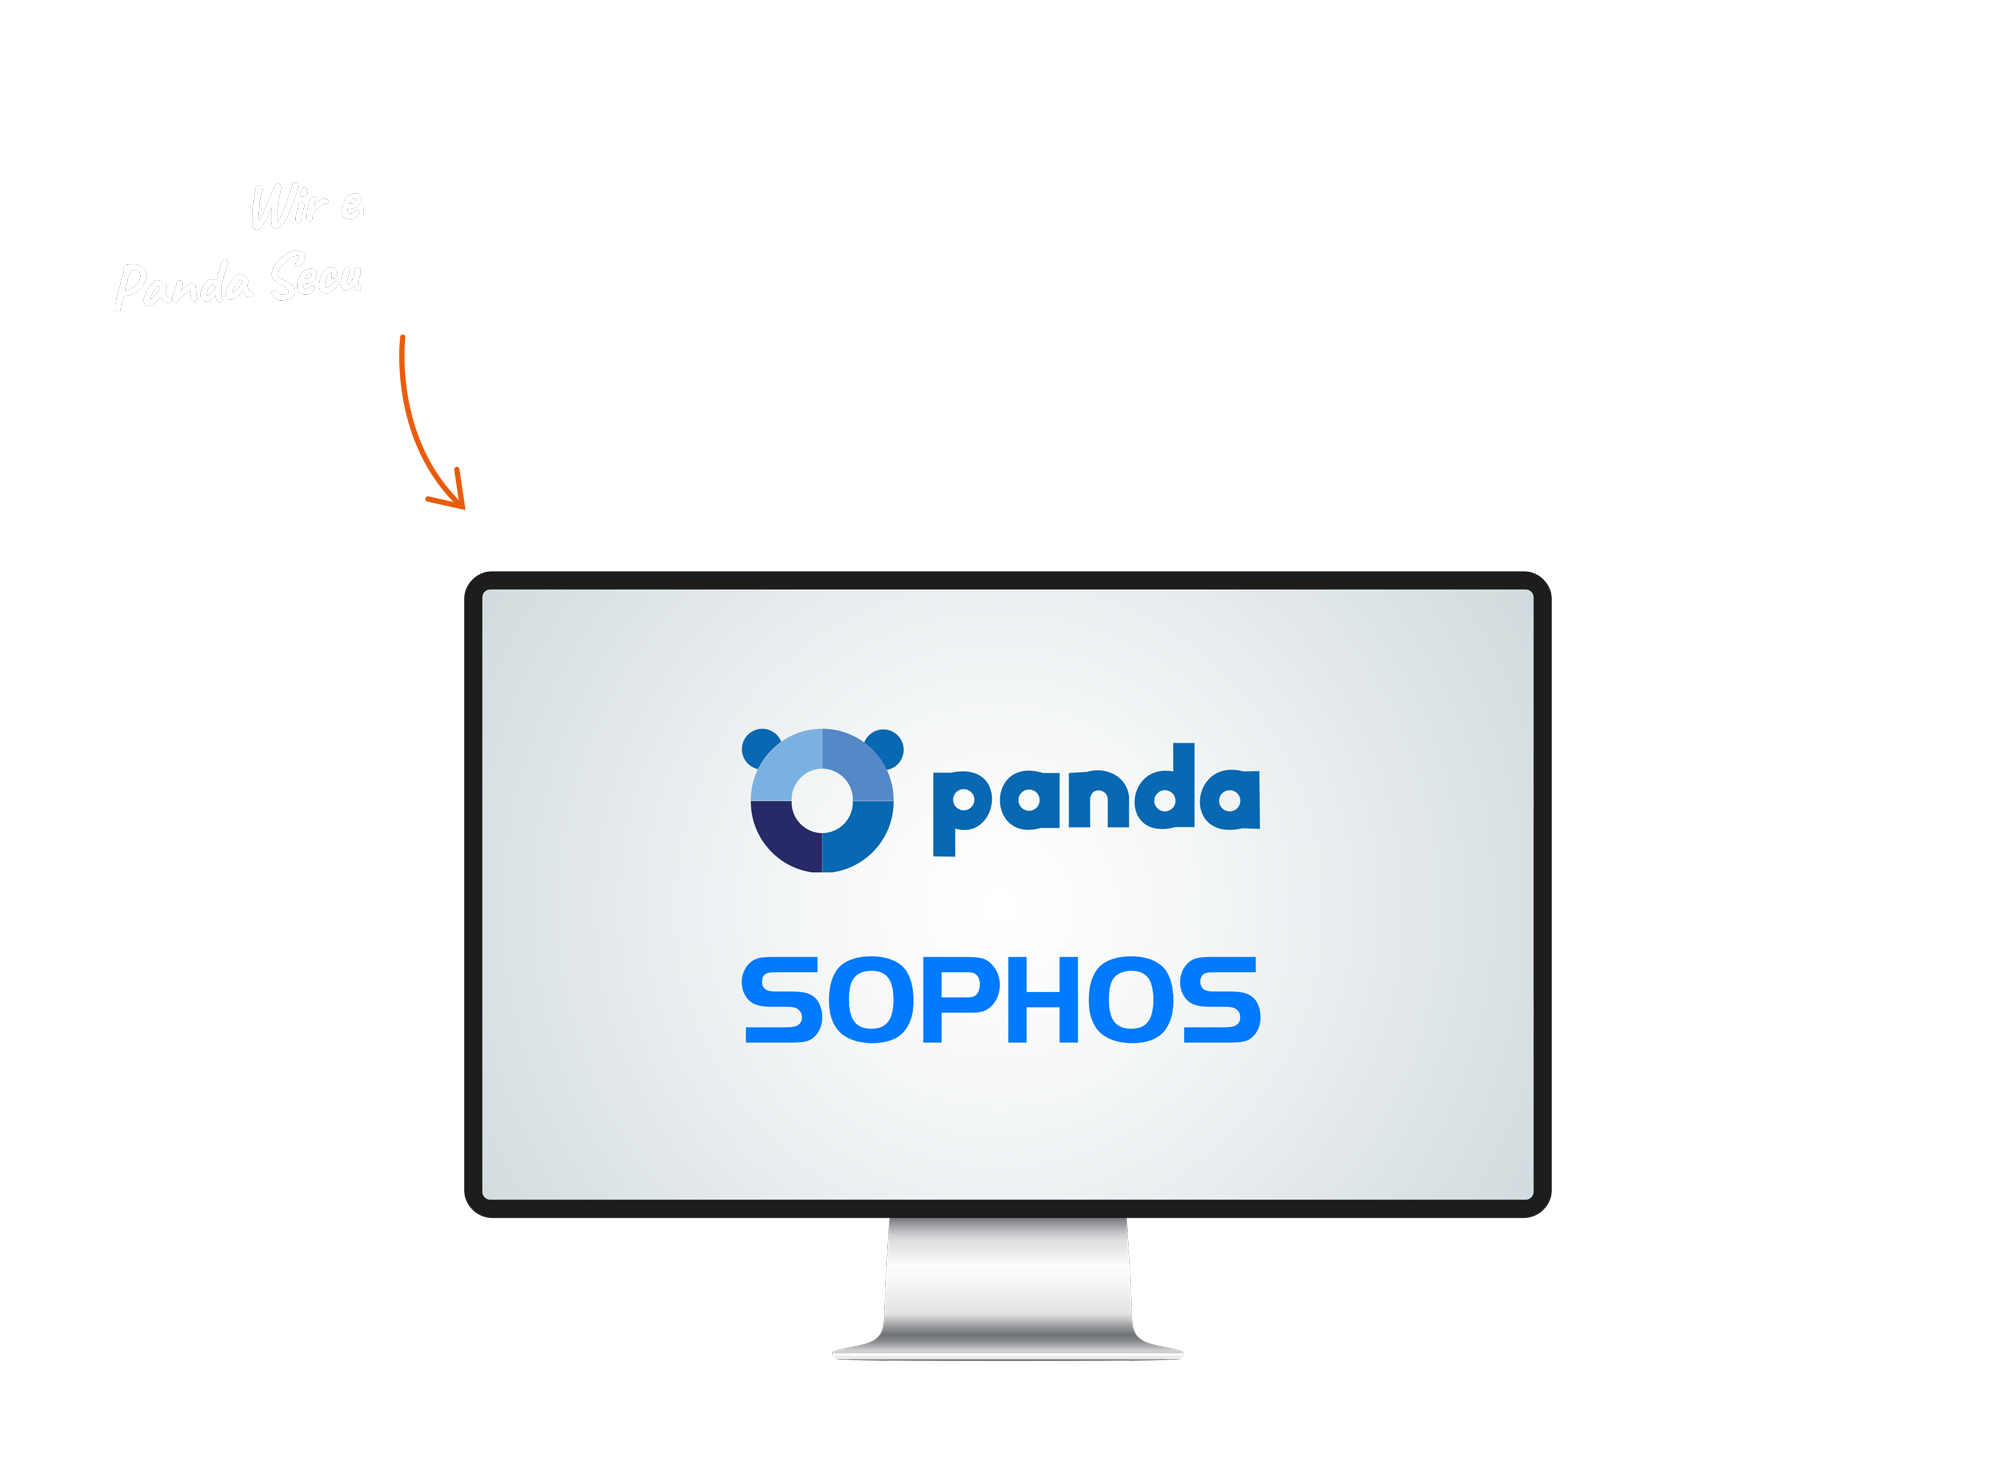 "Wir empfehlen das DMS von ELO" steht neben einem Monitor auf dem die Logos von Panda Security und Sophos abgebildet sind